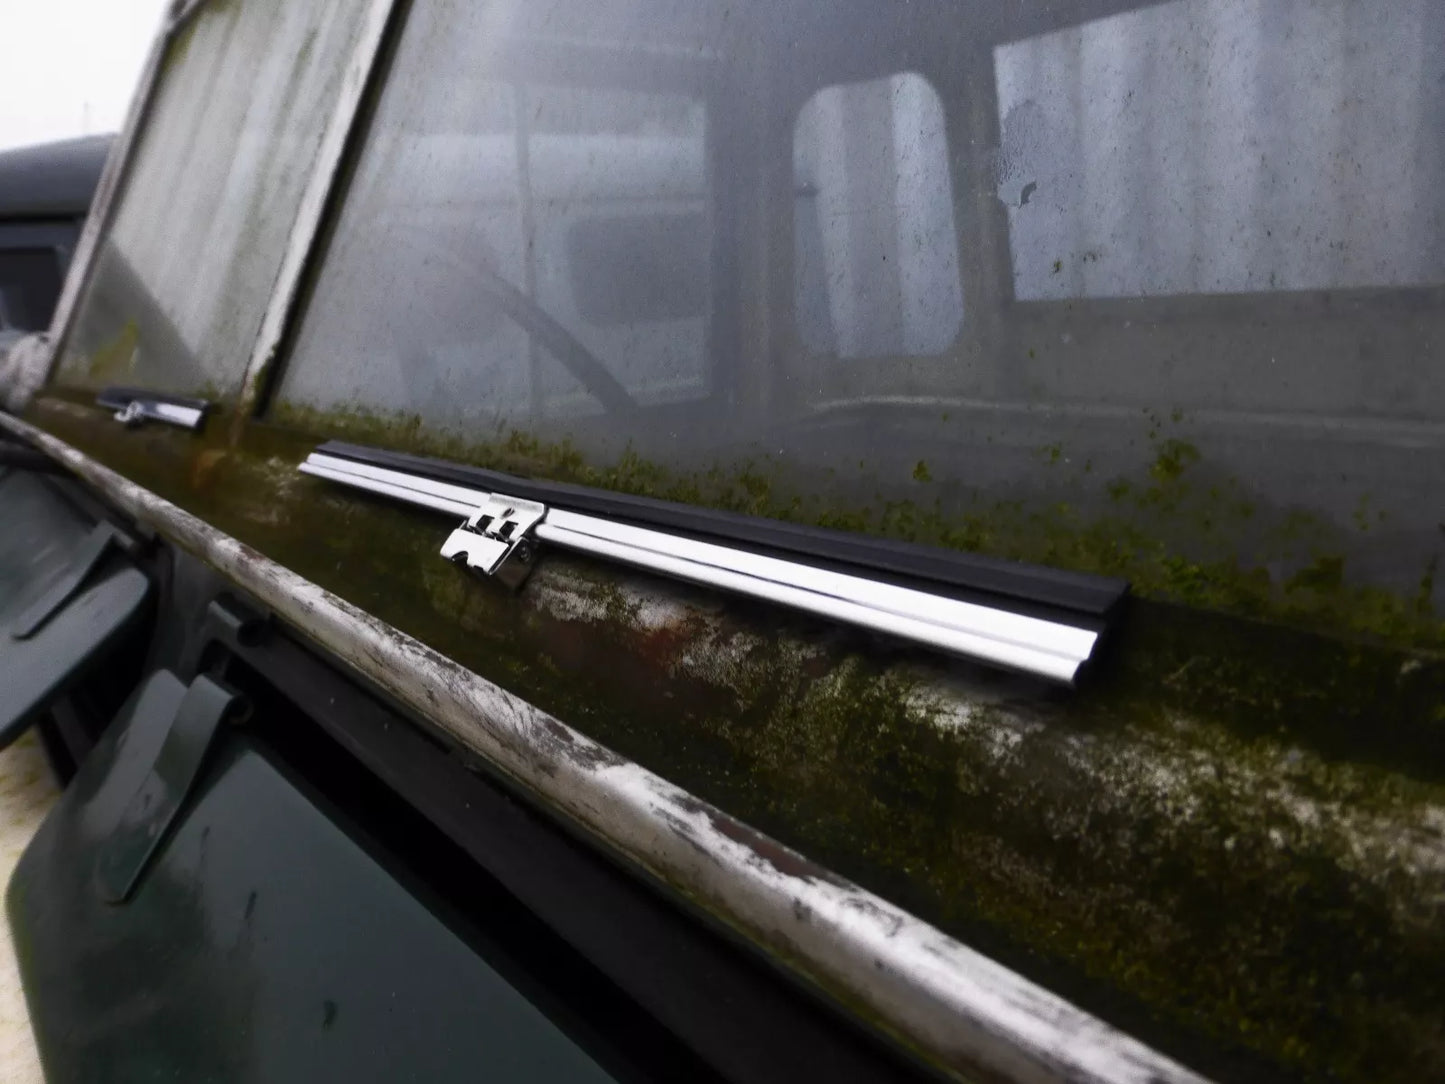 Land Rover série 1 80 86 107 2a cuillère en acier inoxydable pour balai d'essuie-glace x2